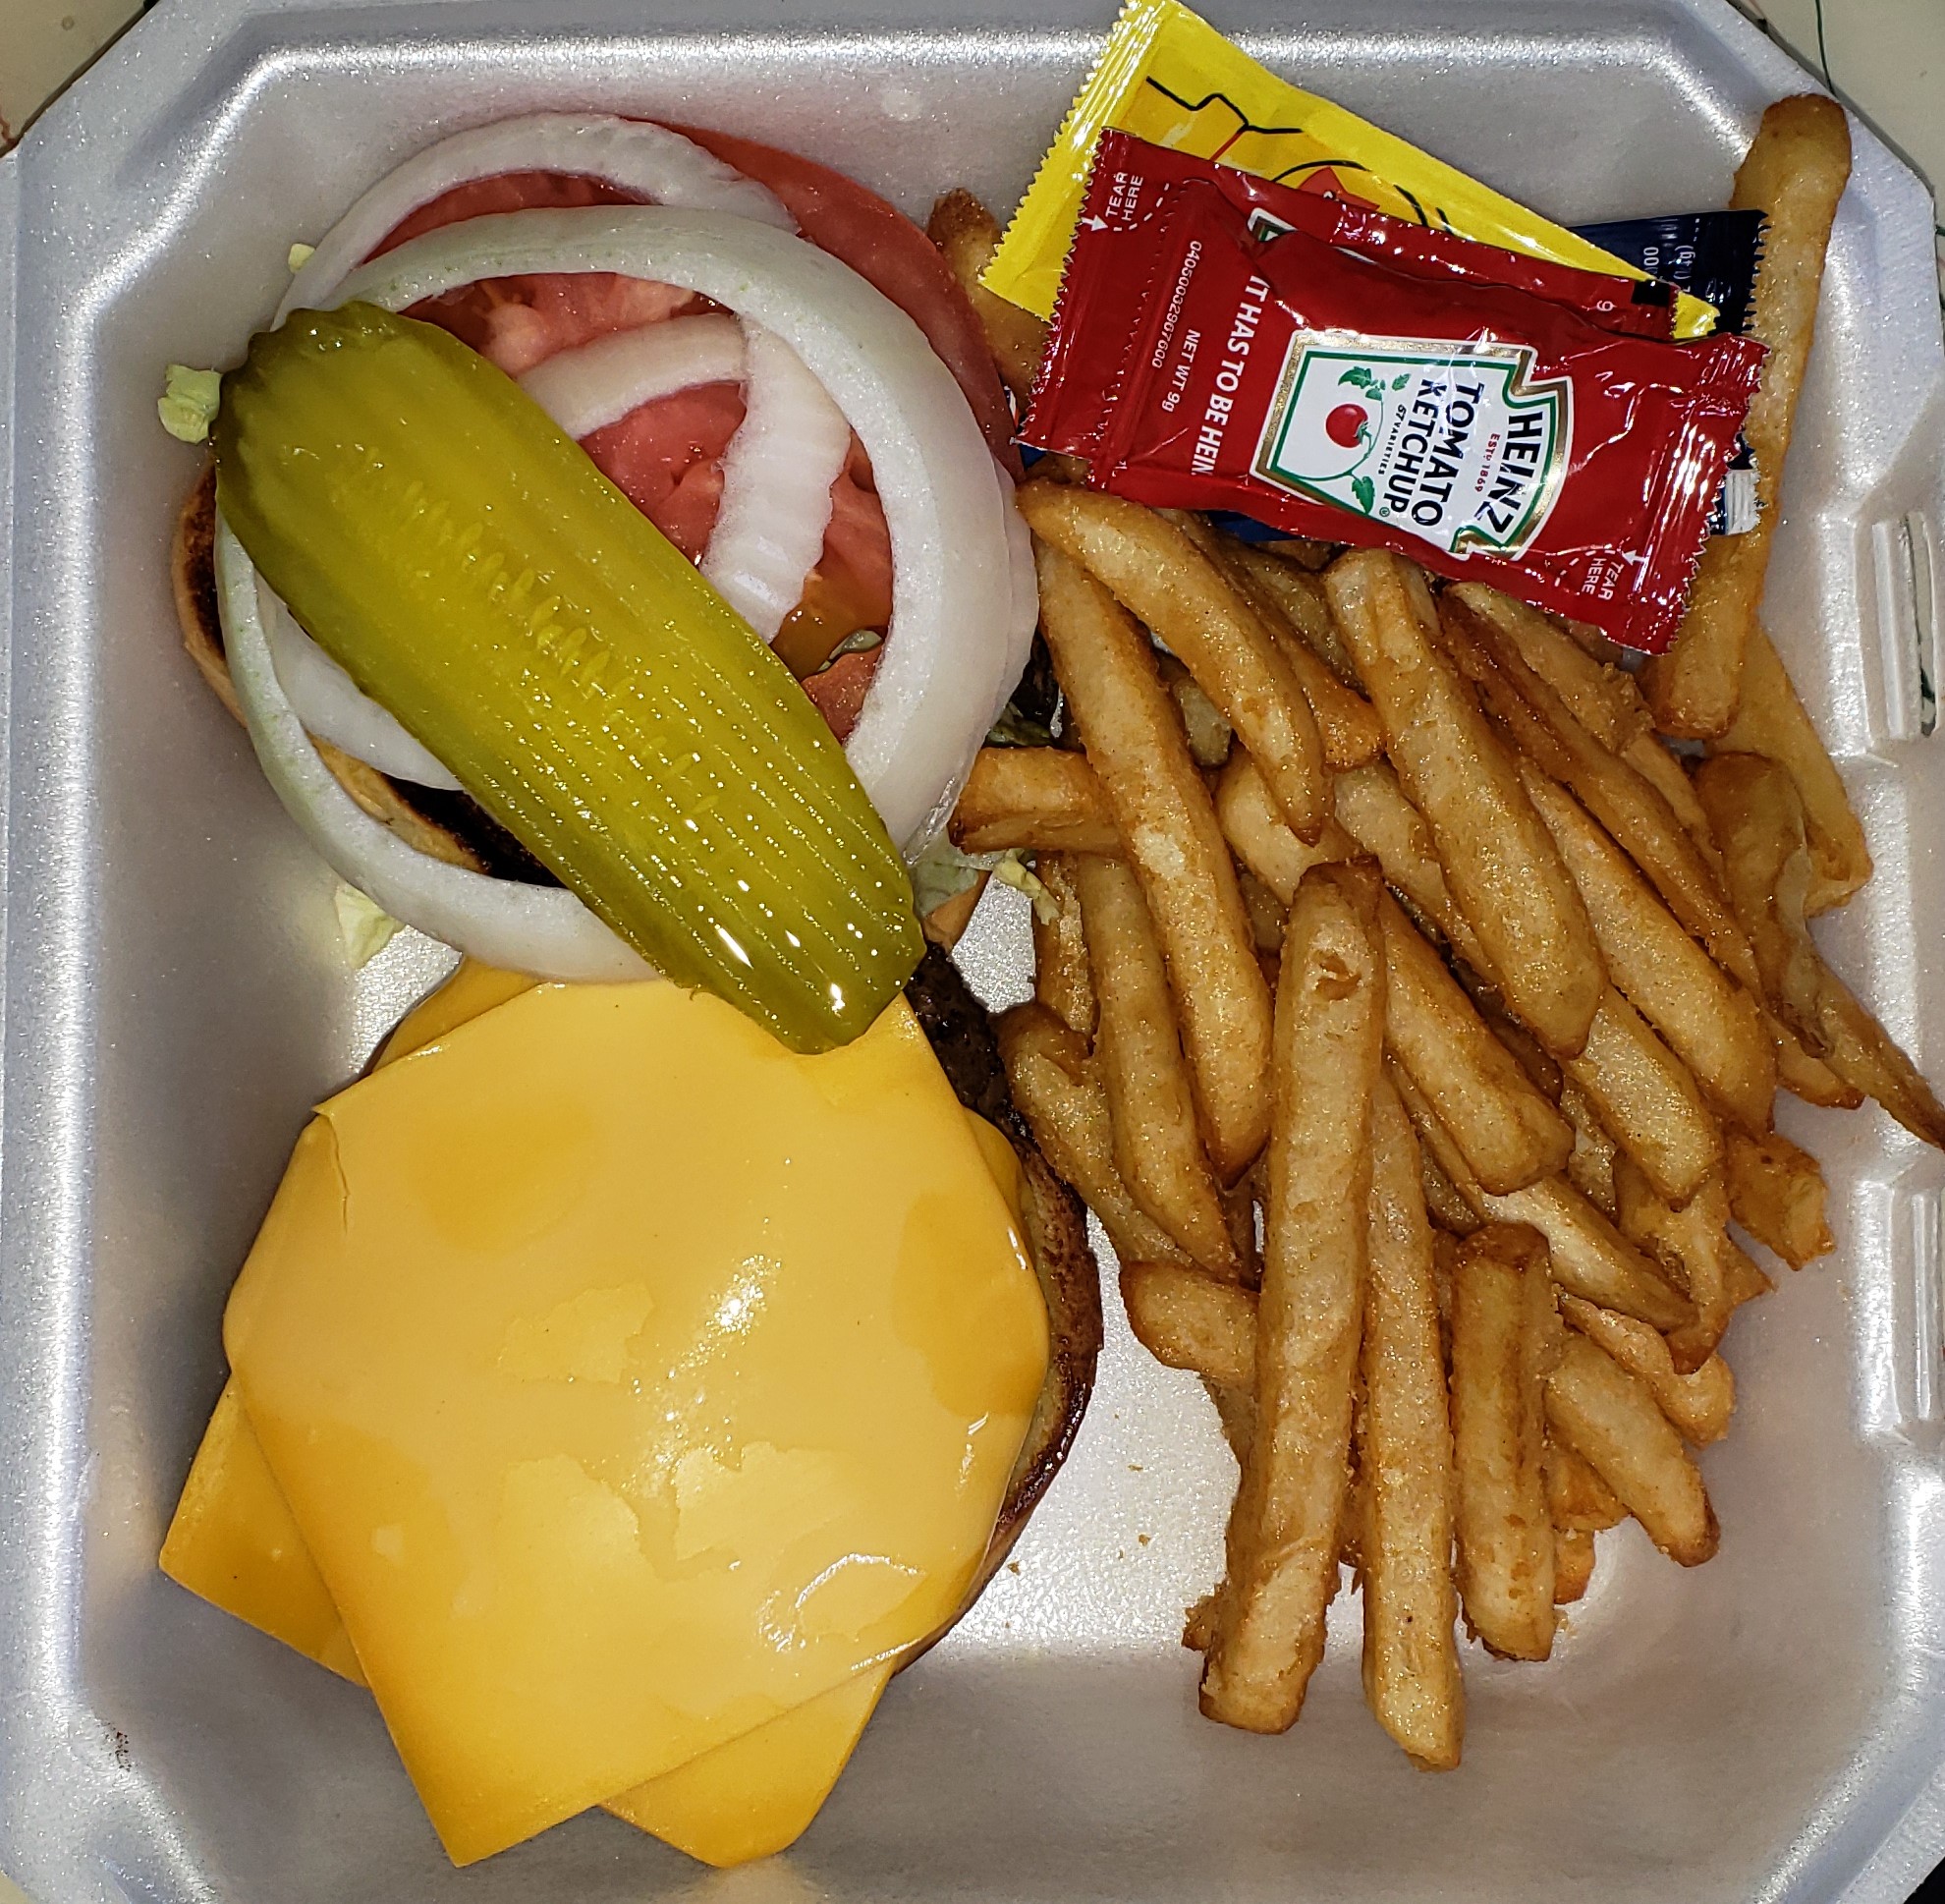 Cheese Burger - $9.45